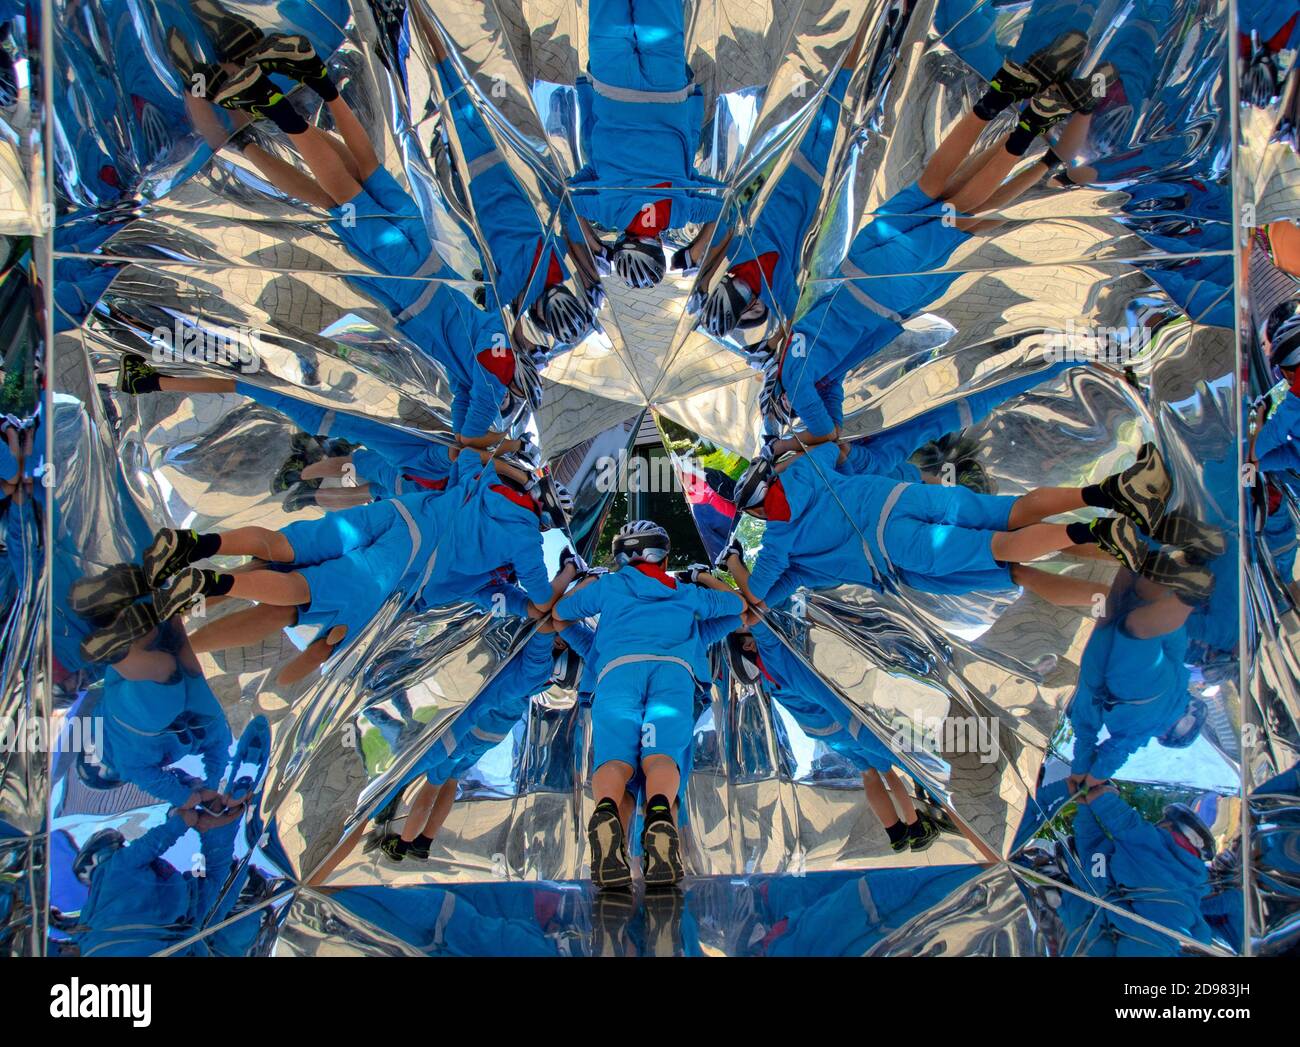 Garçon en vêtements bleus miroir dans l'objet miroir Taumascopio de l'artiste Mattia Paco Rizzi à Zingst, Allemagne Banque D'Images